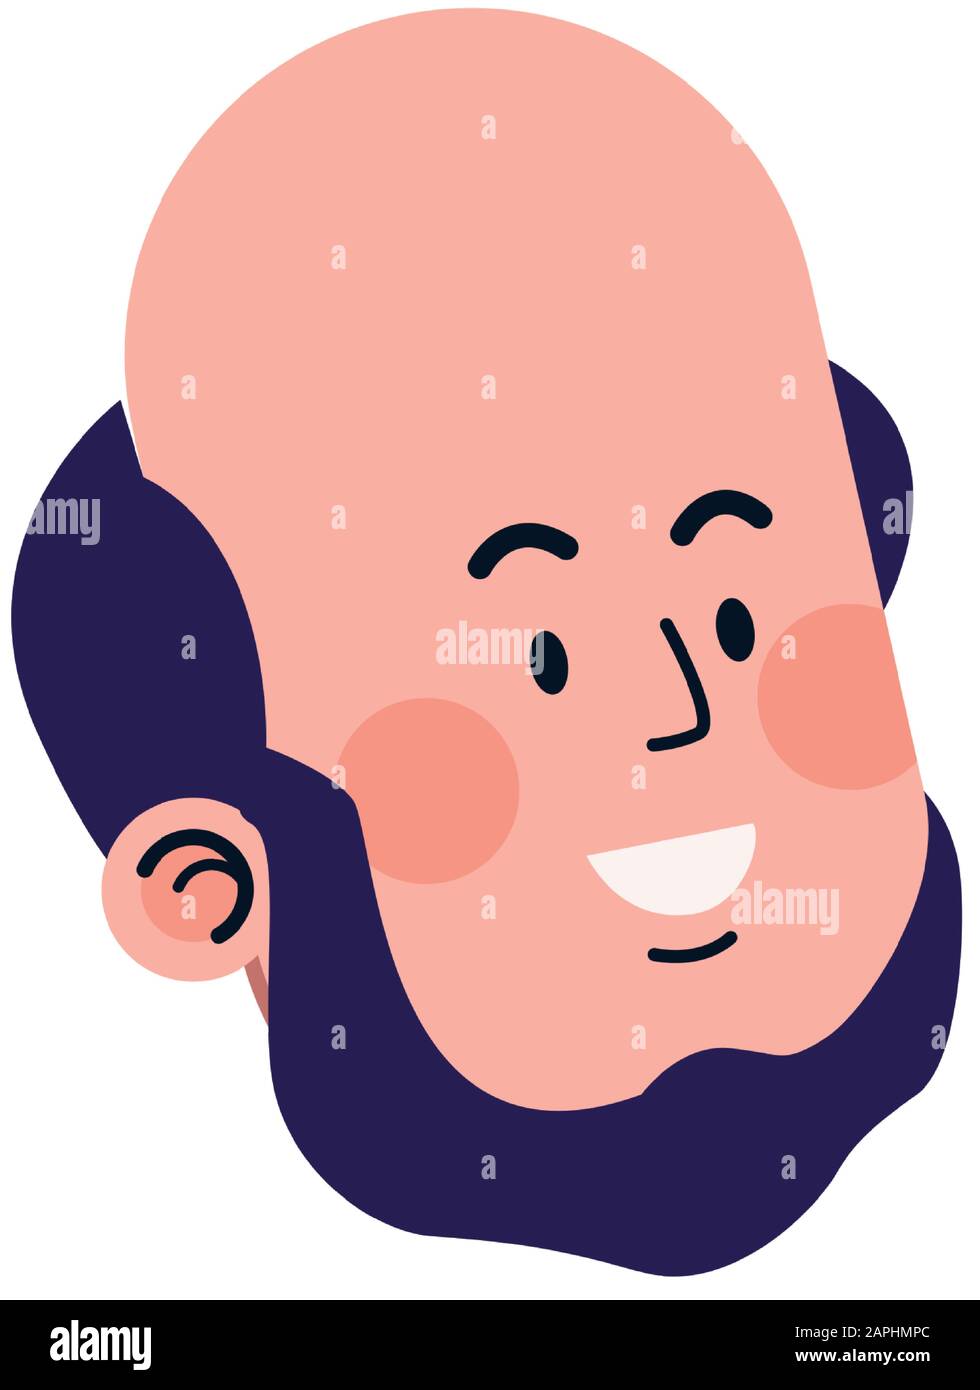 cartoon bald man smiling icon Stock Vector